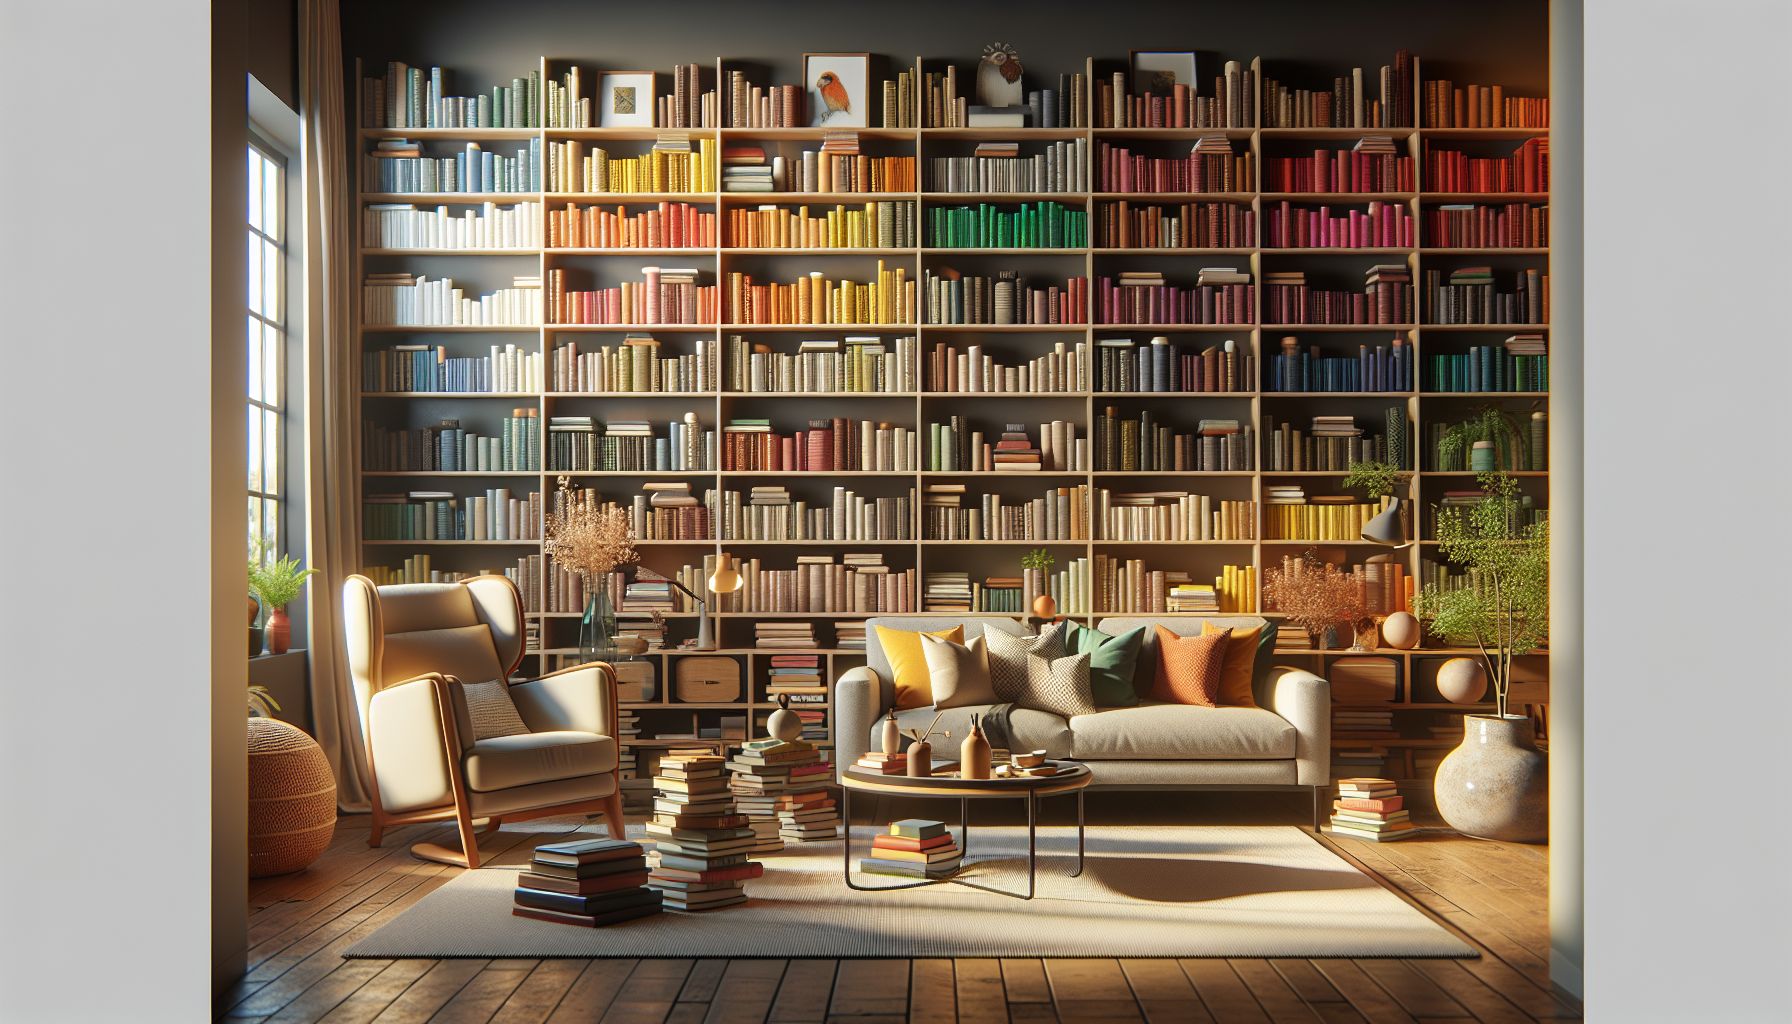 Ideen für Wandregale im Wohnzimmer- Ordne Bücher farblich für visuelles Interesse